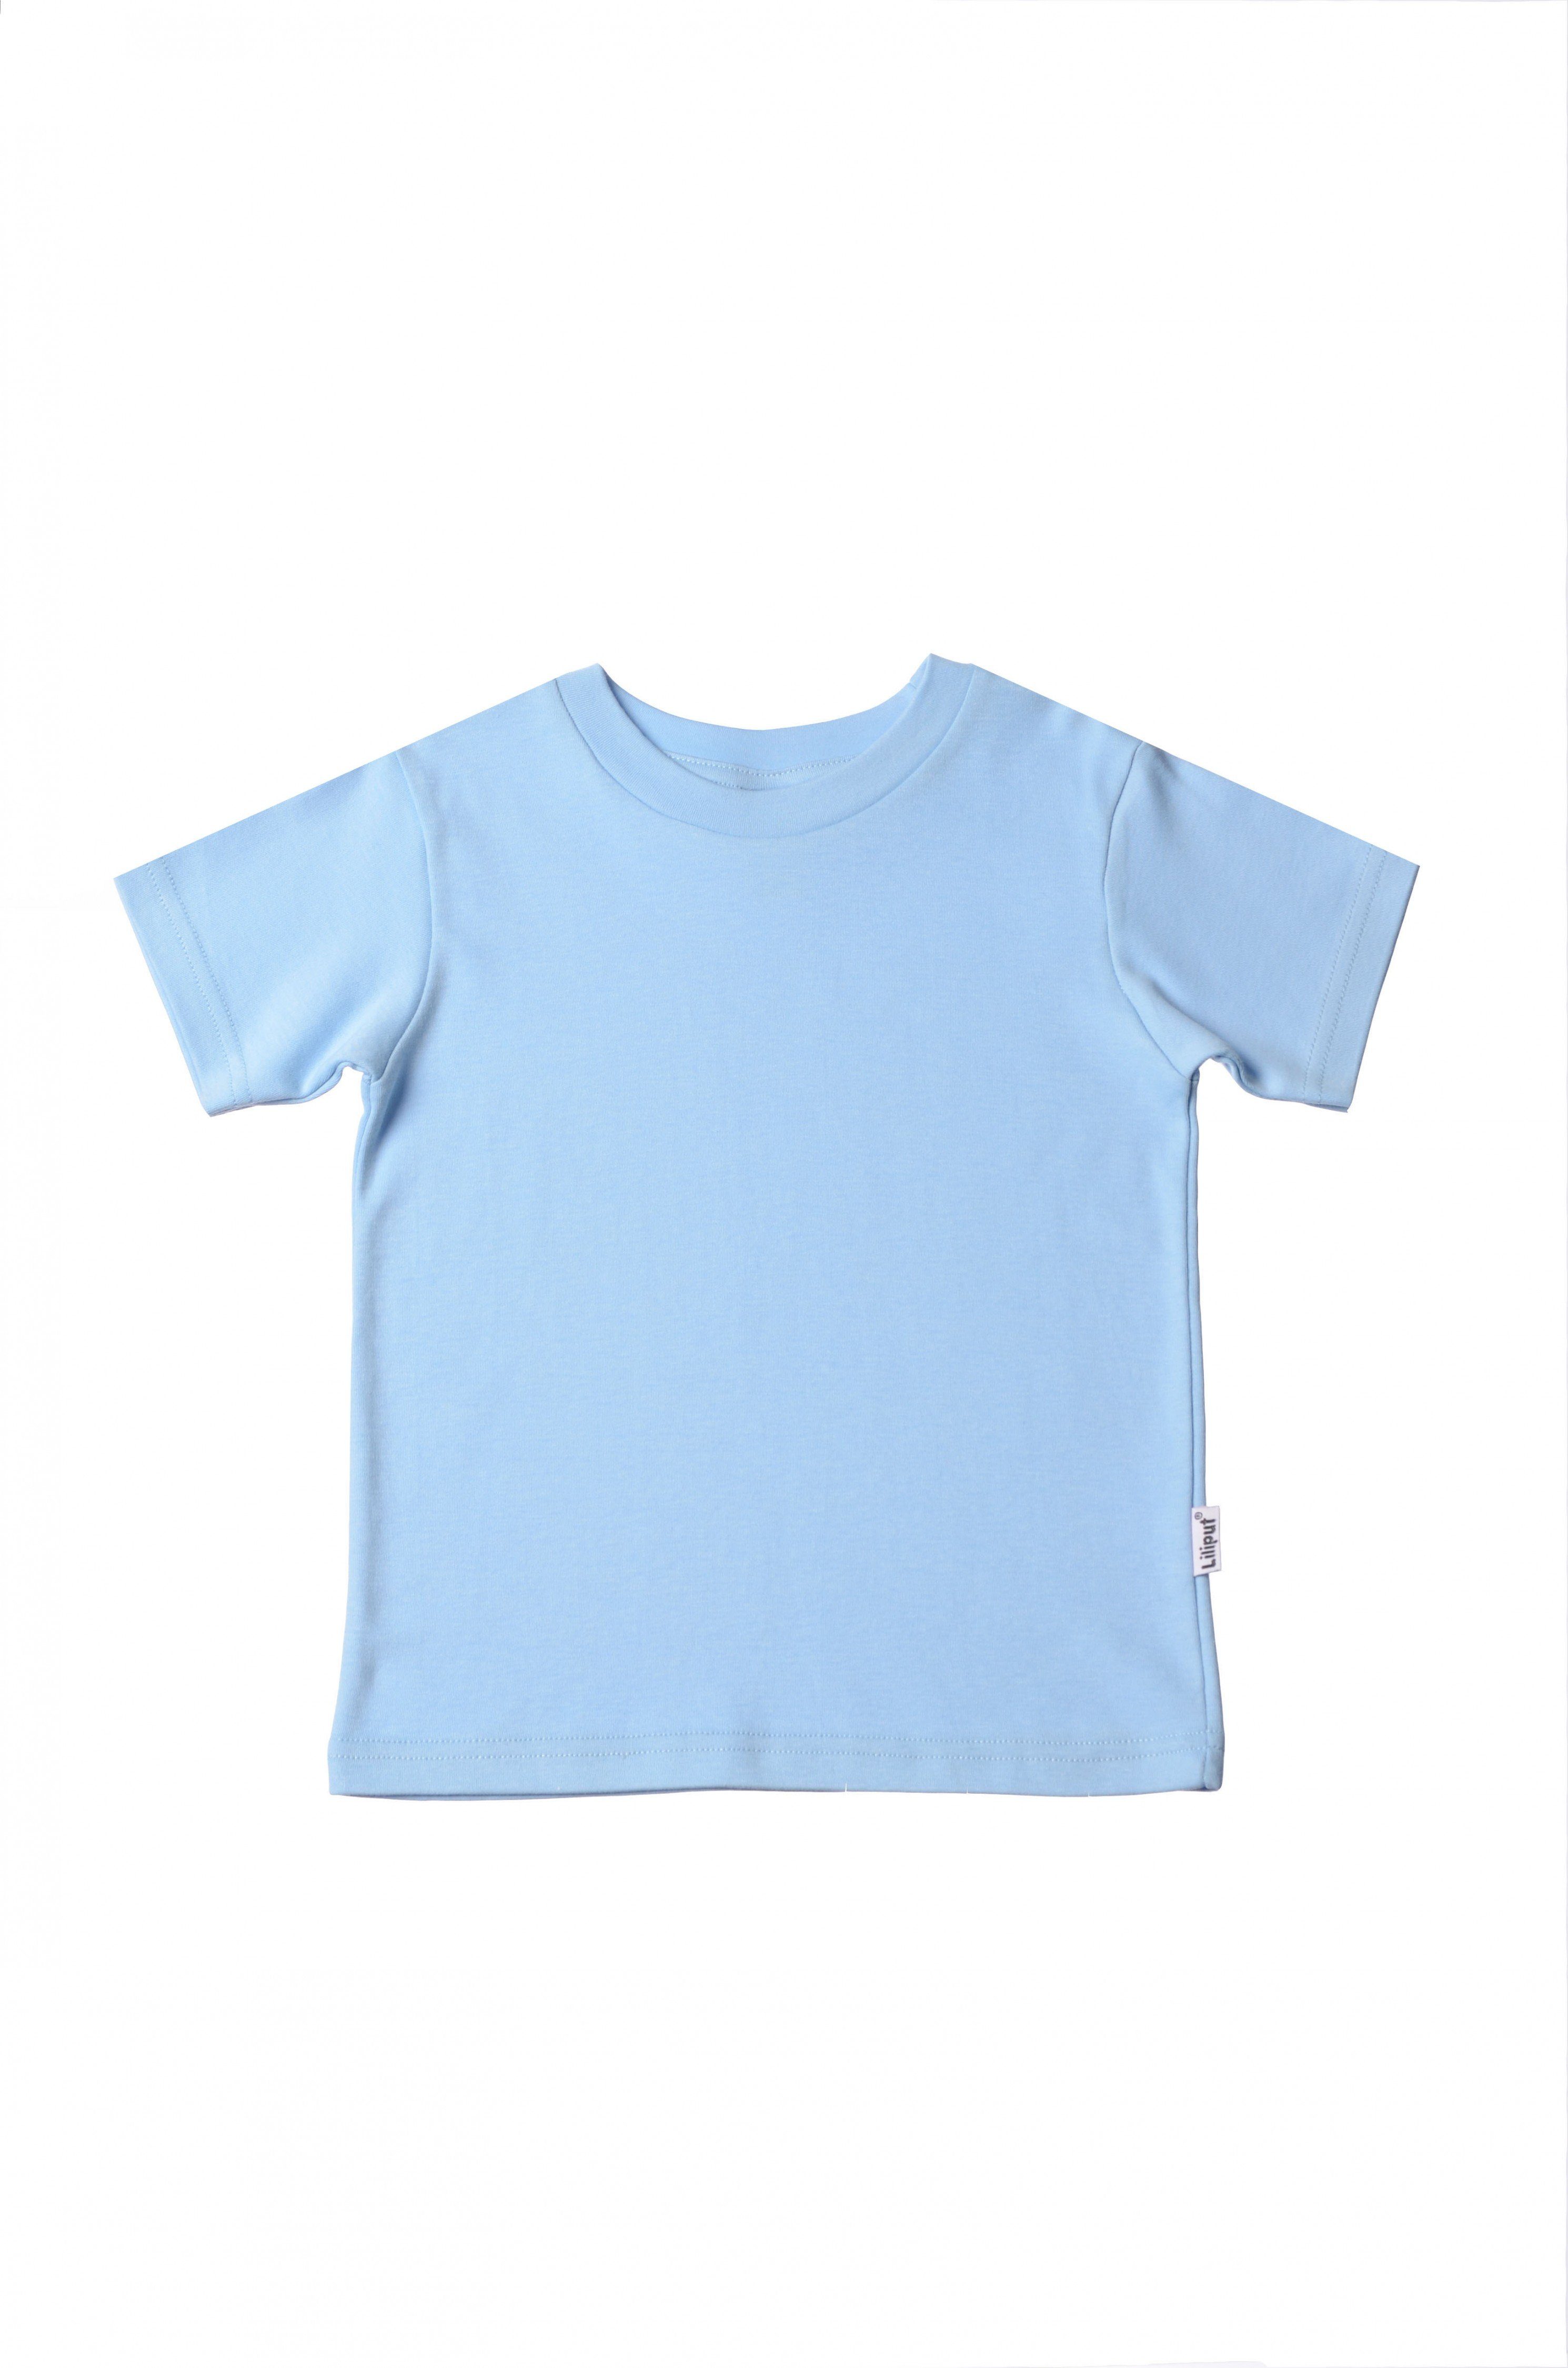 hellblau in T-Shirt Liliput Design niedlichem